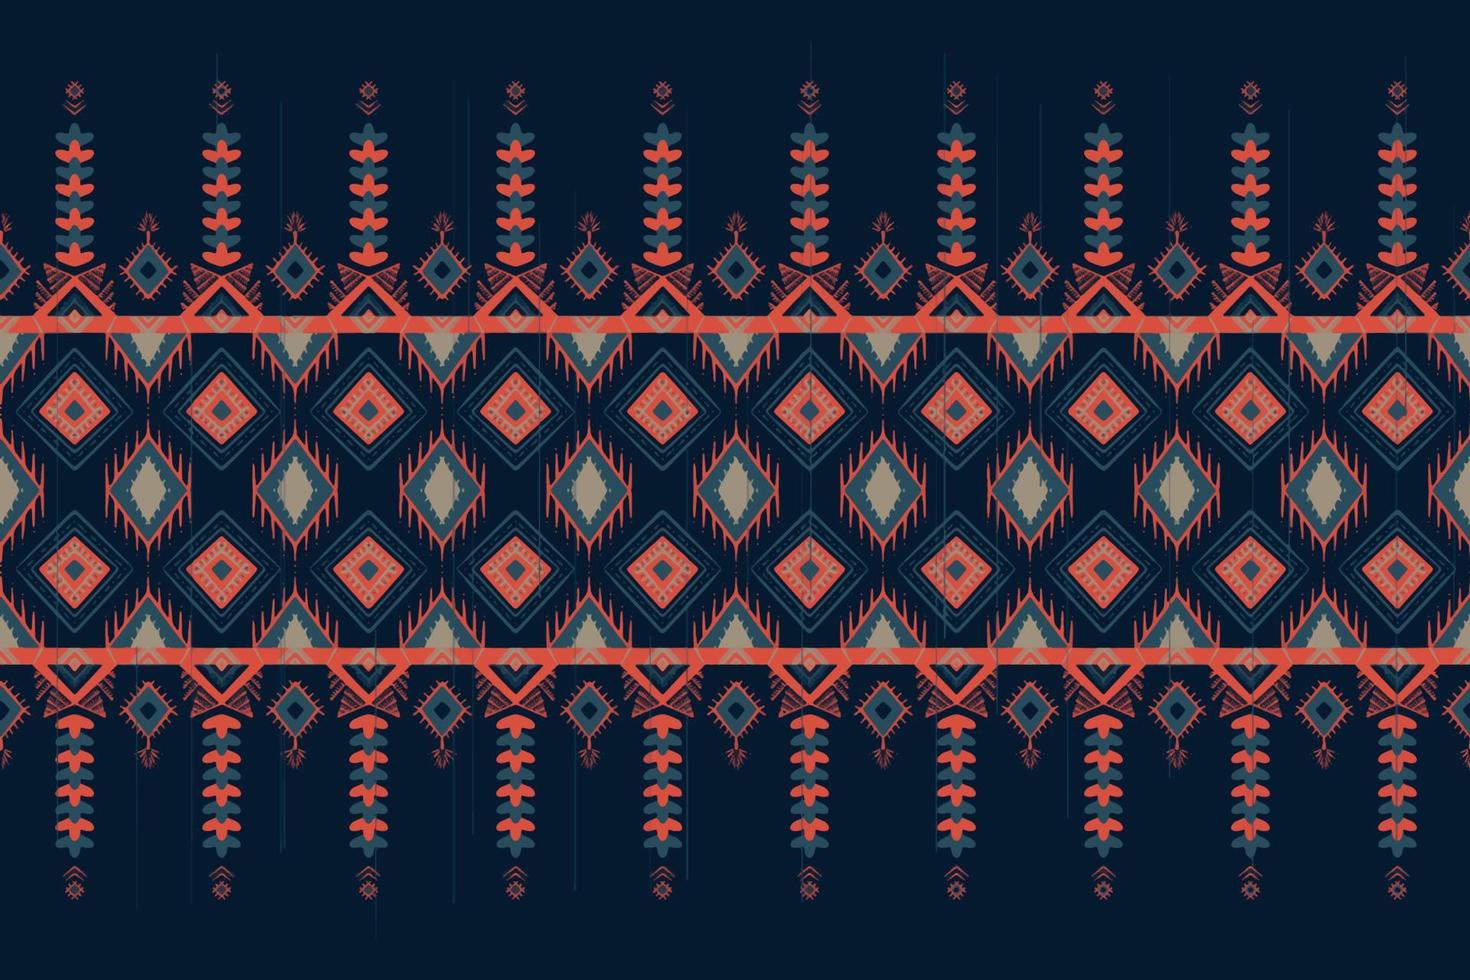 azul e laranja em índigo. design tradicional de padrão oriental étnico geométrico para plano de fundo, tapete, papel de parede, roupas, embrulho, batik, tecido, estilo de bordado de ilustração vetorial vetor